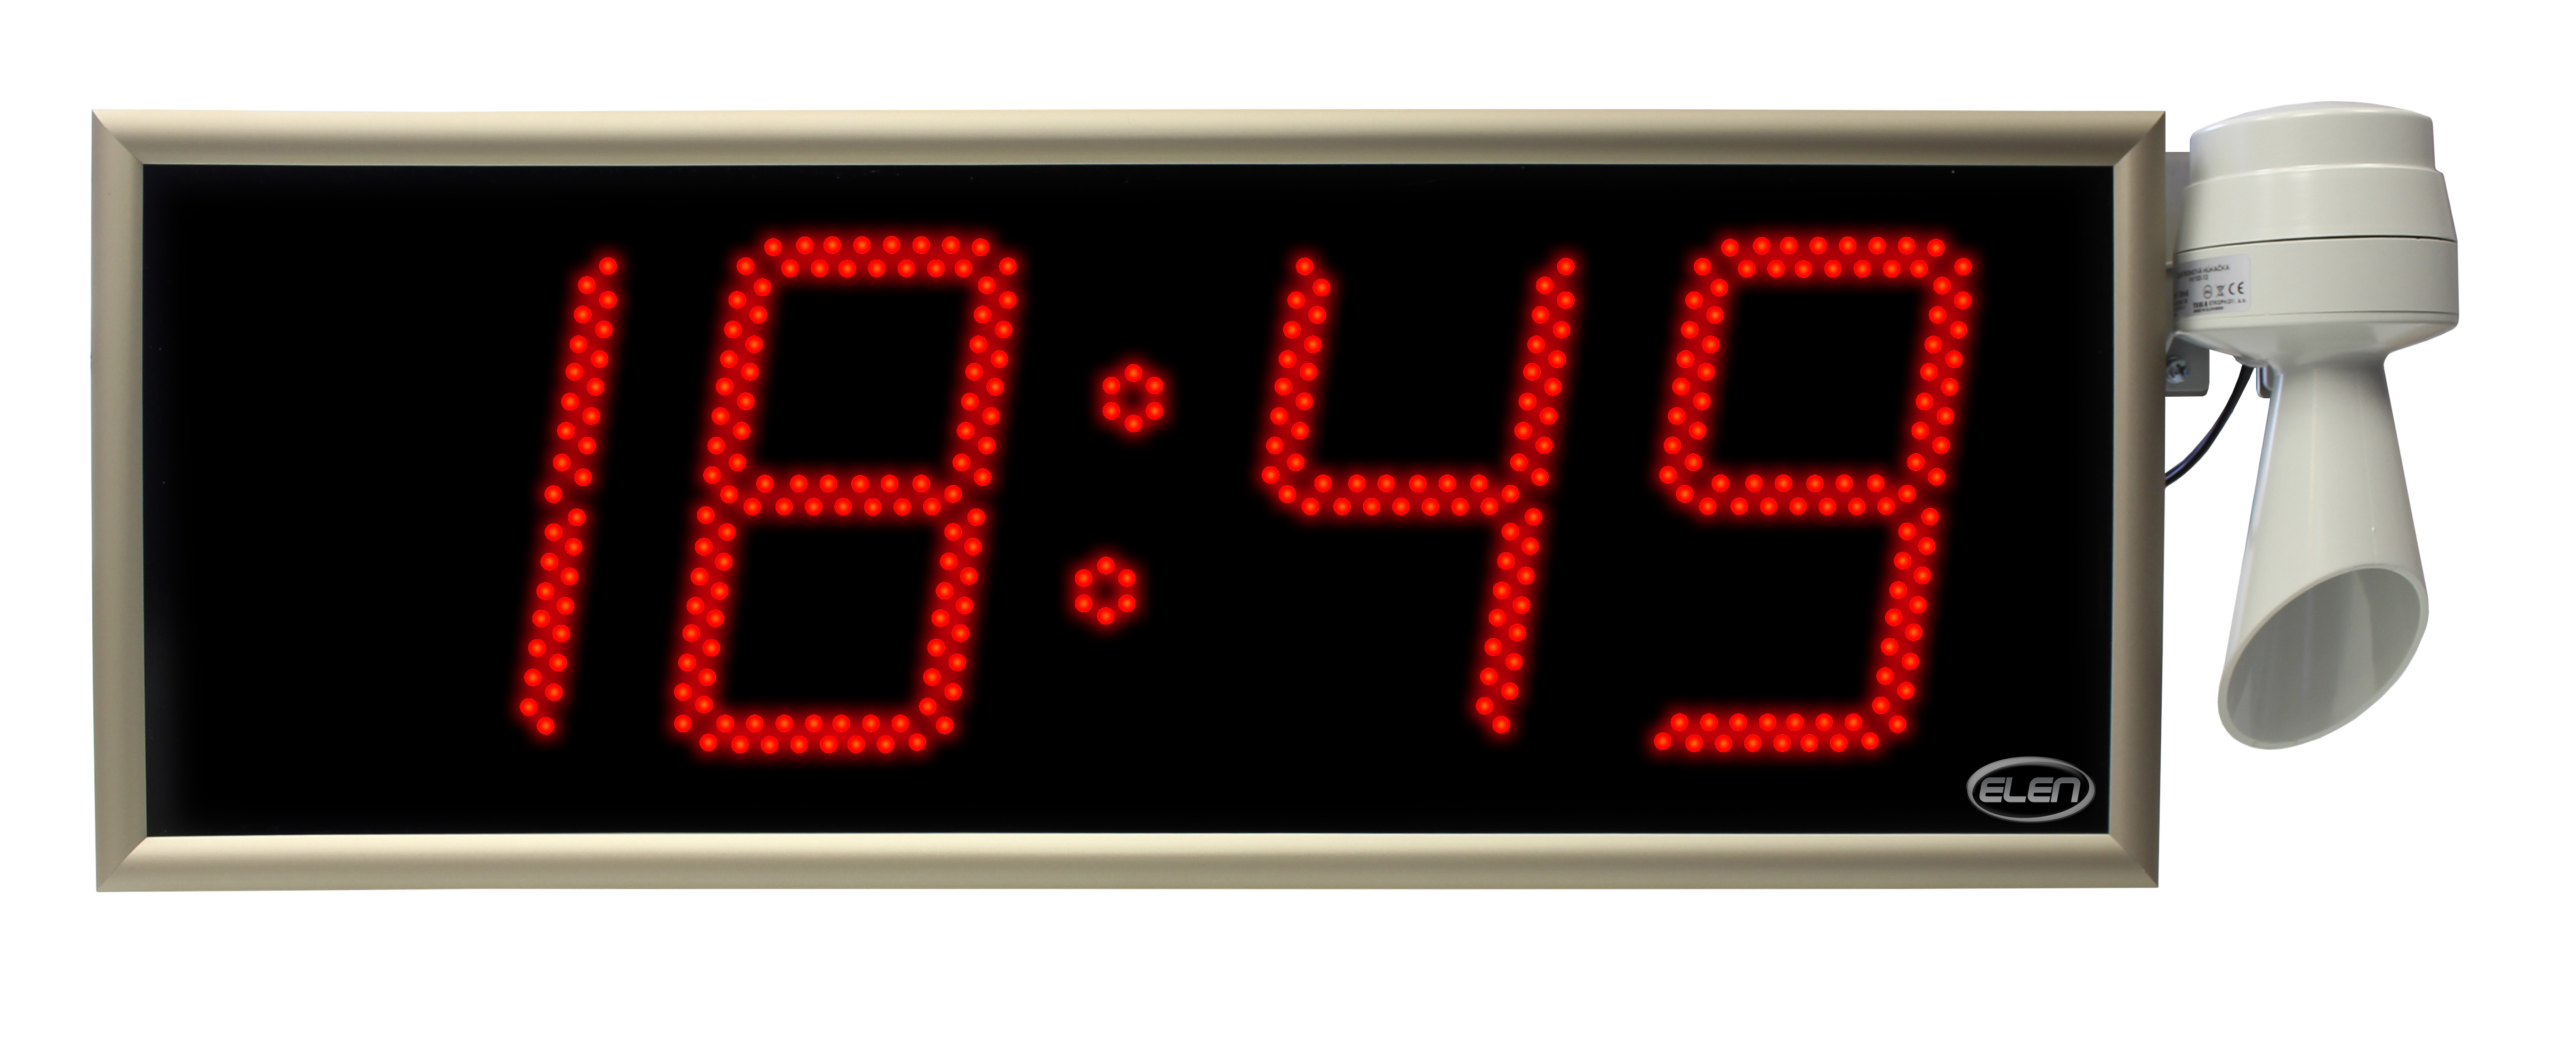 Digital clocks for displaying time -<br/>NDC 160/4 R L20 PoE LAN<br/>-interface PoE LAN